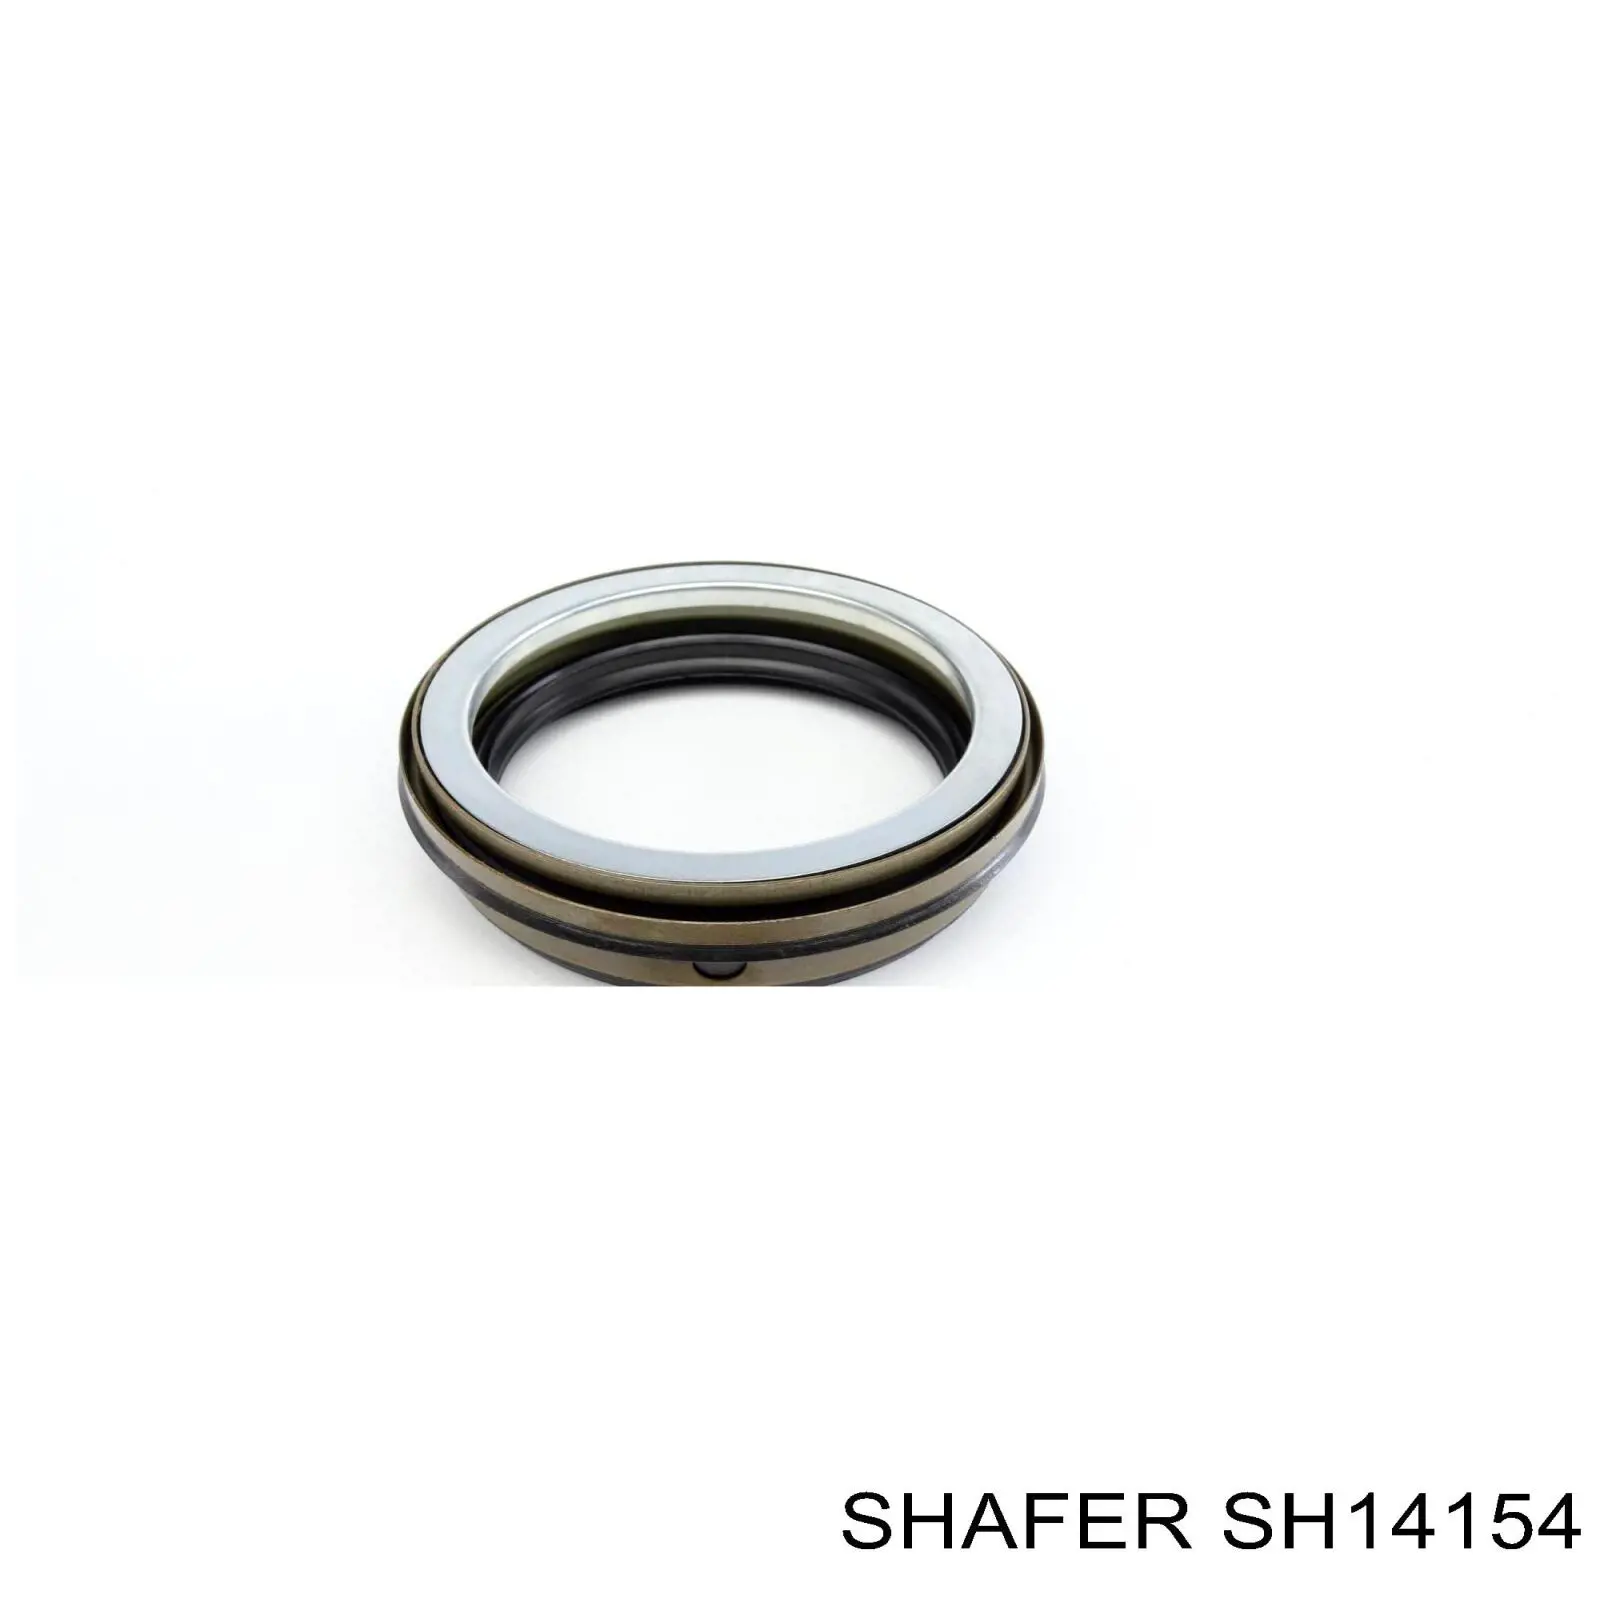 SH141.54 Shafer ступица задняя